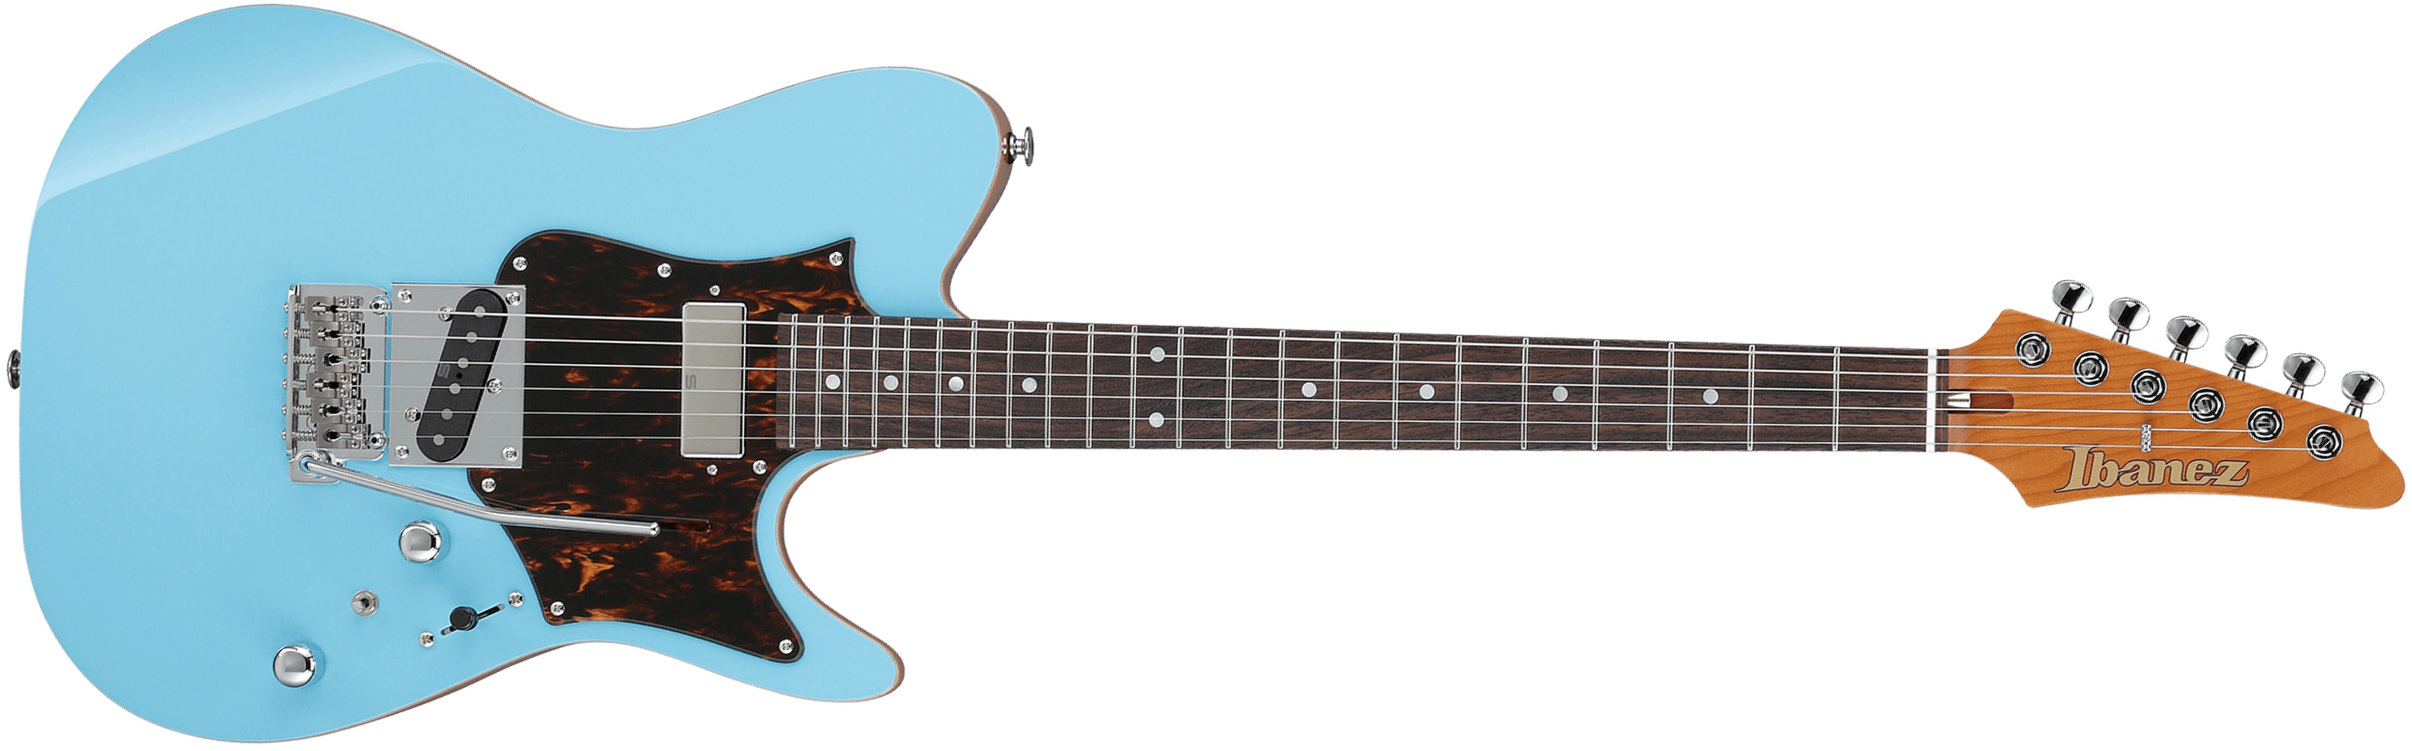 Ibanez Tom Quayle Tqms1 Ctb Jap Signature Smh Trem Rw - Celeste Blue - Tel shape electric guitar - Main picture